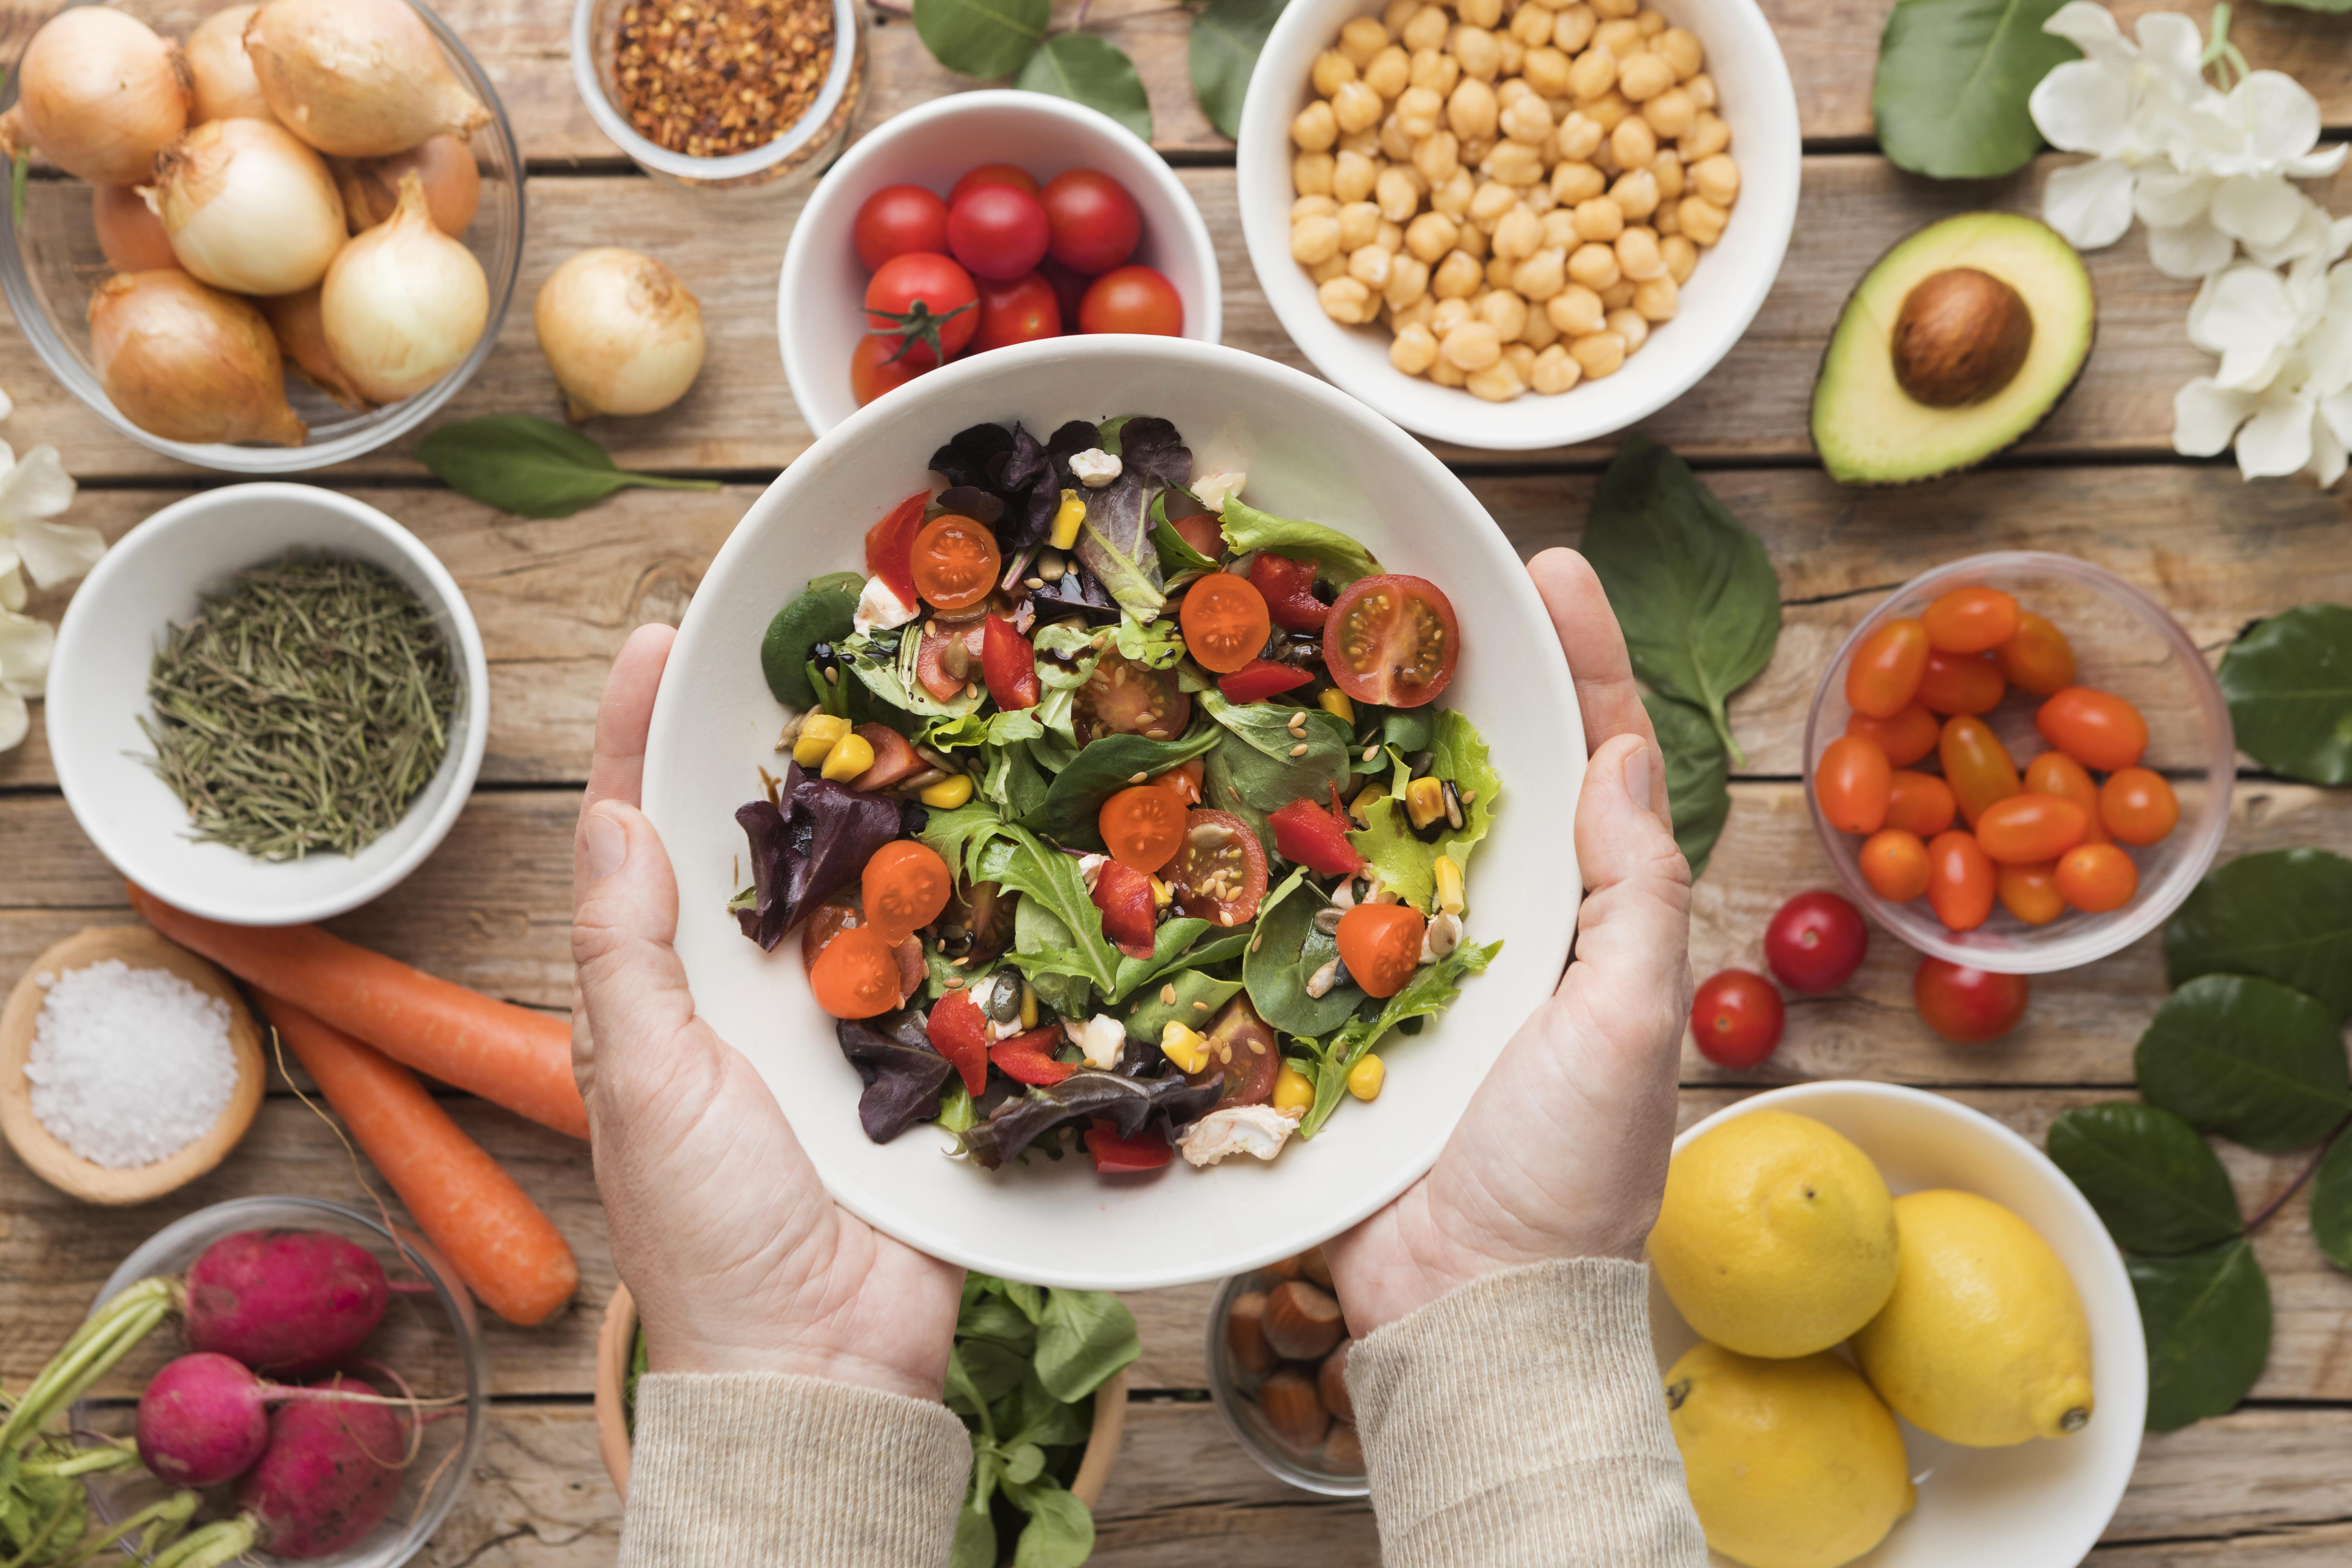 Vista superior de ingredientes e legumes em um prato de salada. Em volta, estão pequenas vasilhas com alimentos deste contexto